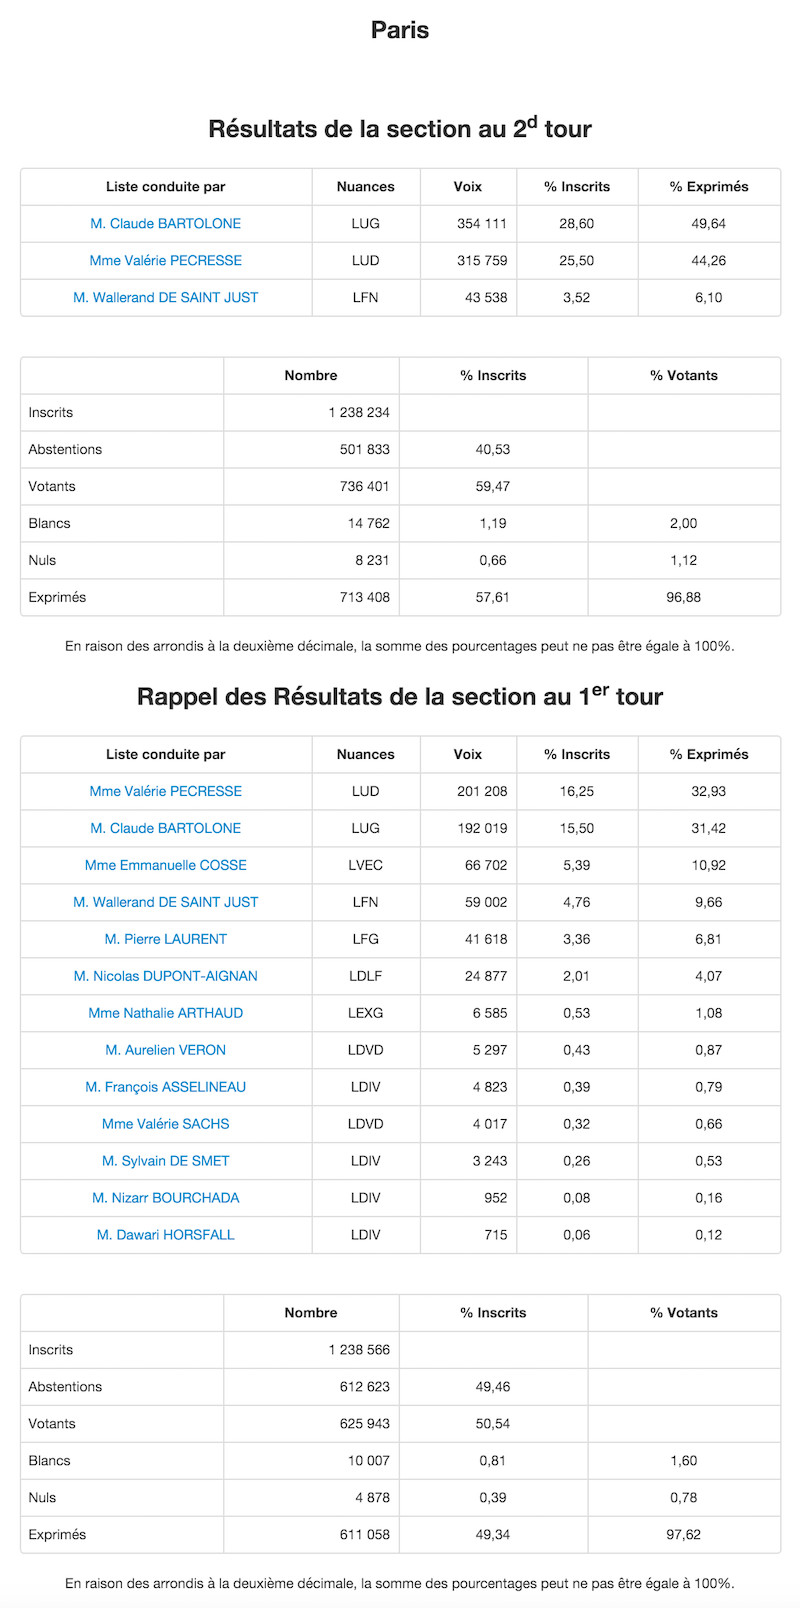 Régionales 2015 et 2010 dans le 7e arrondissement de Paris